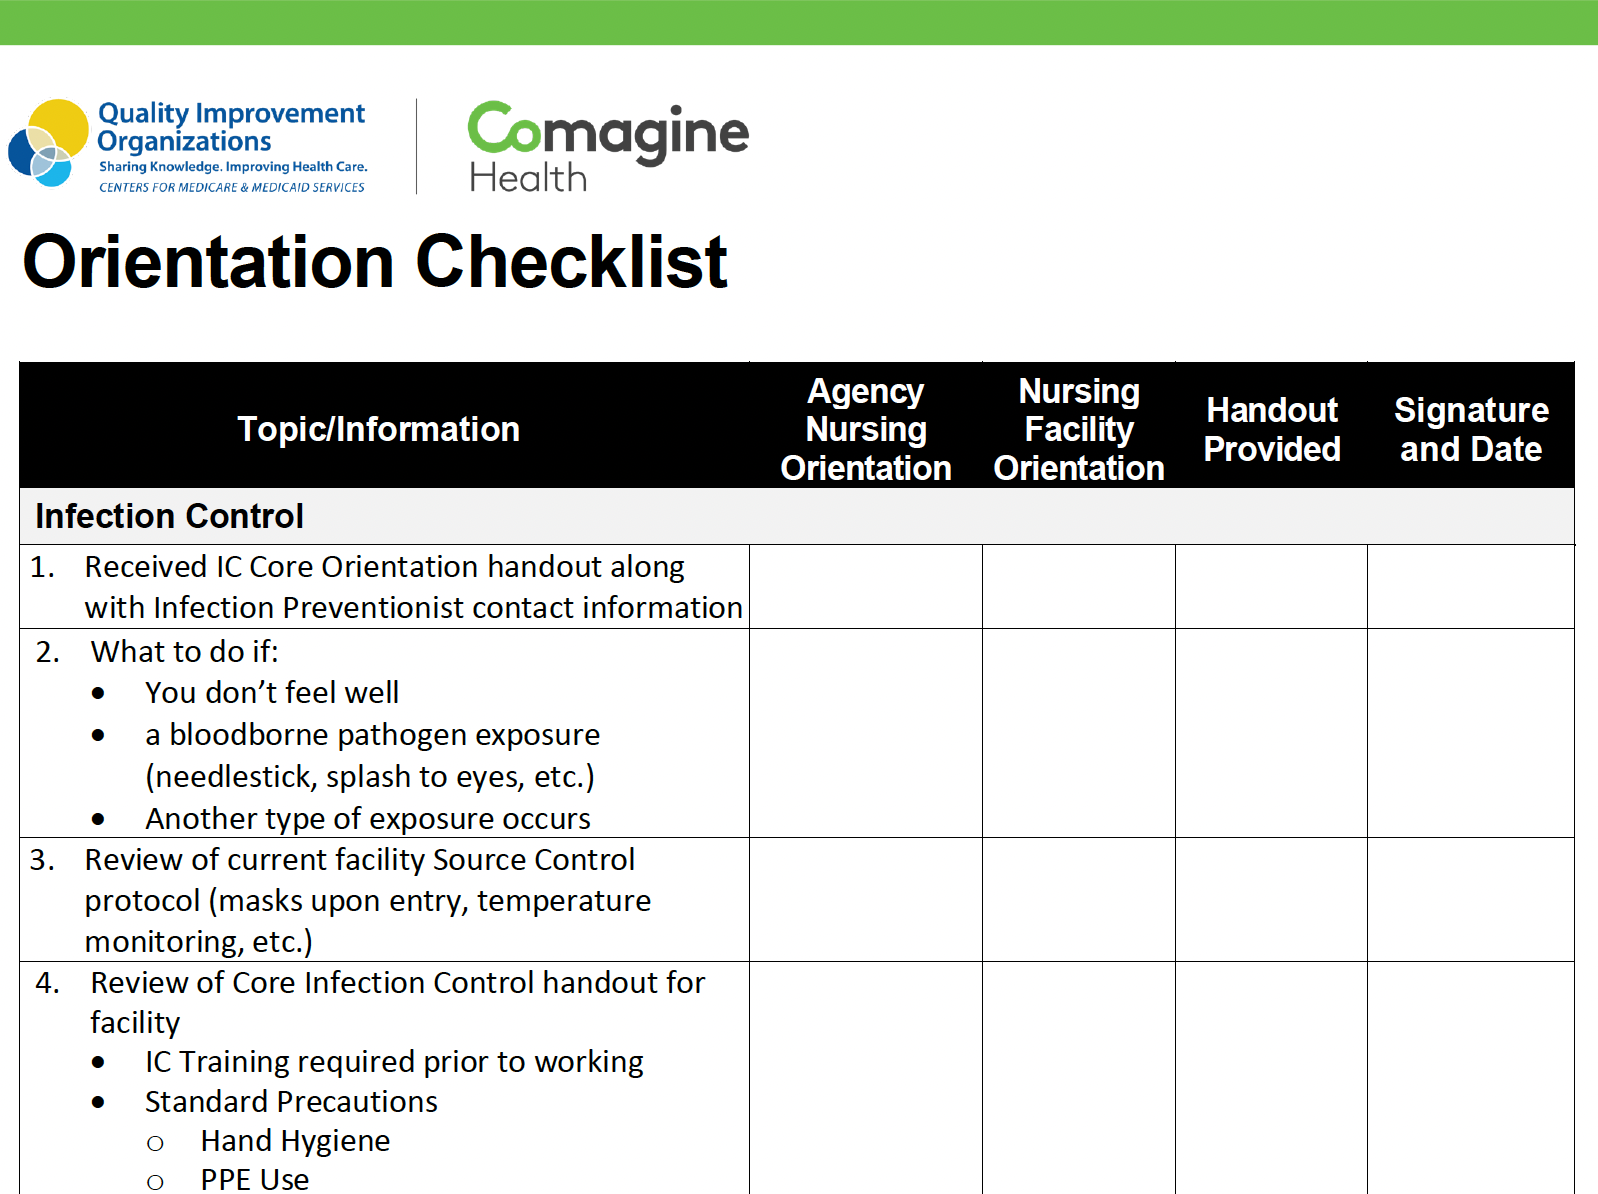 Screen shot of orientation checklist